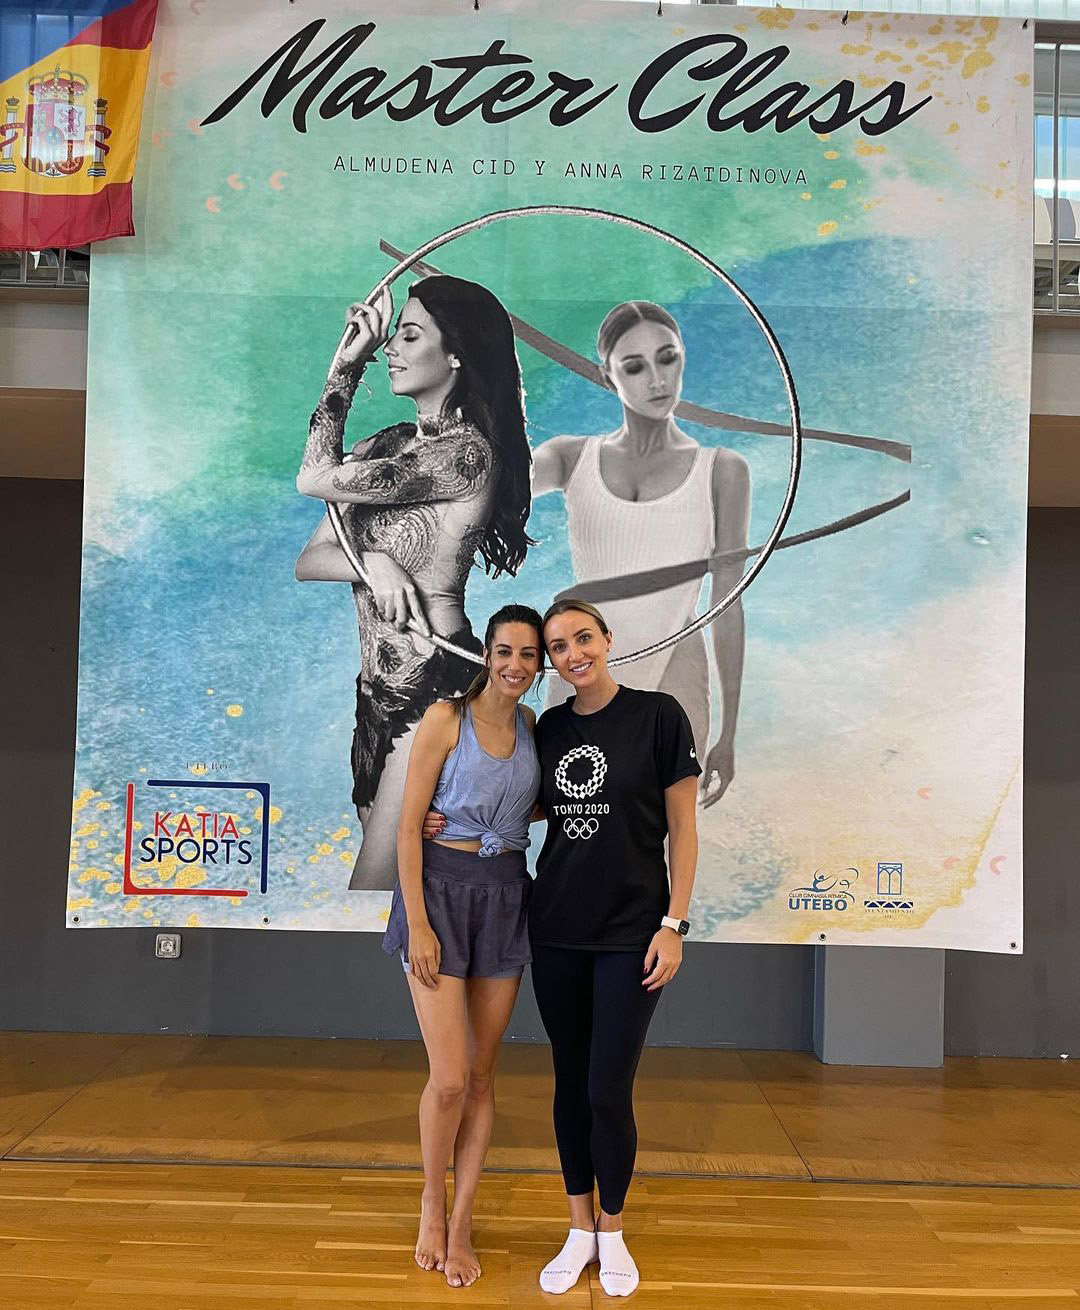 З іспанською гімнасткою Альмуденою Сід Аня проводила і тренування для дітей, і благодійні заходи. Фото: Instagram.com/anna_rizatdinova/